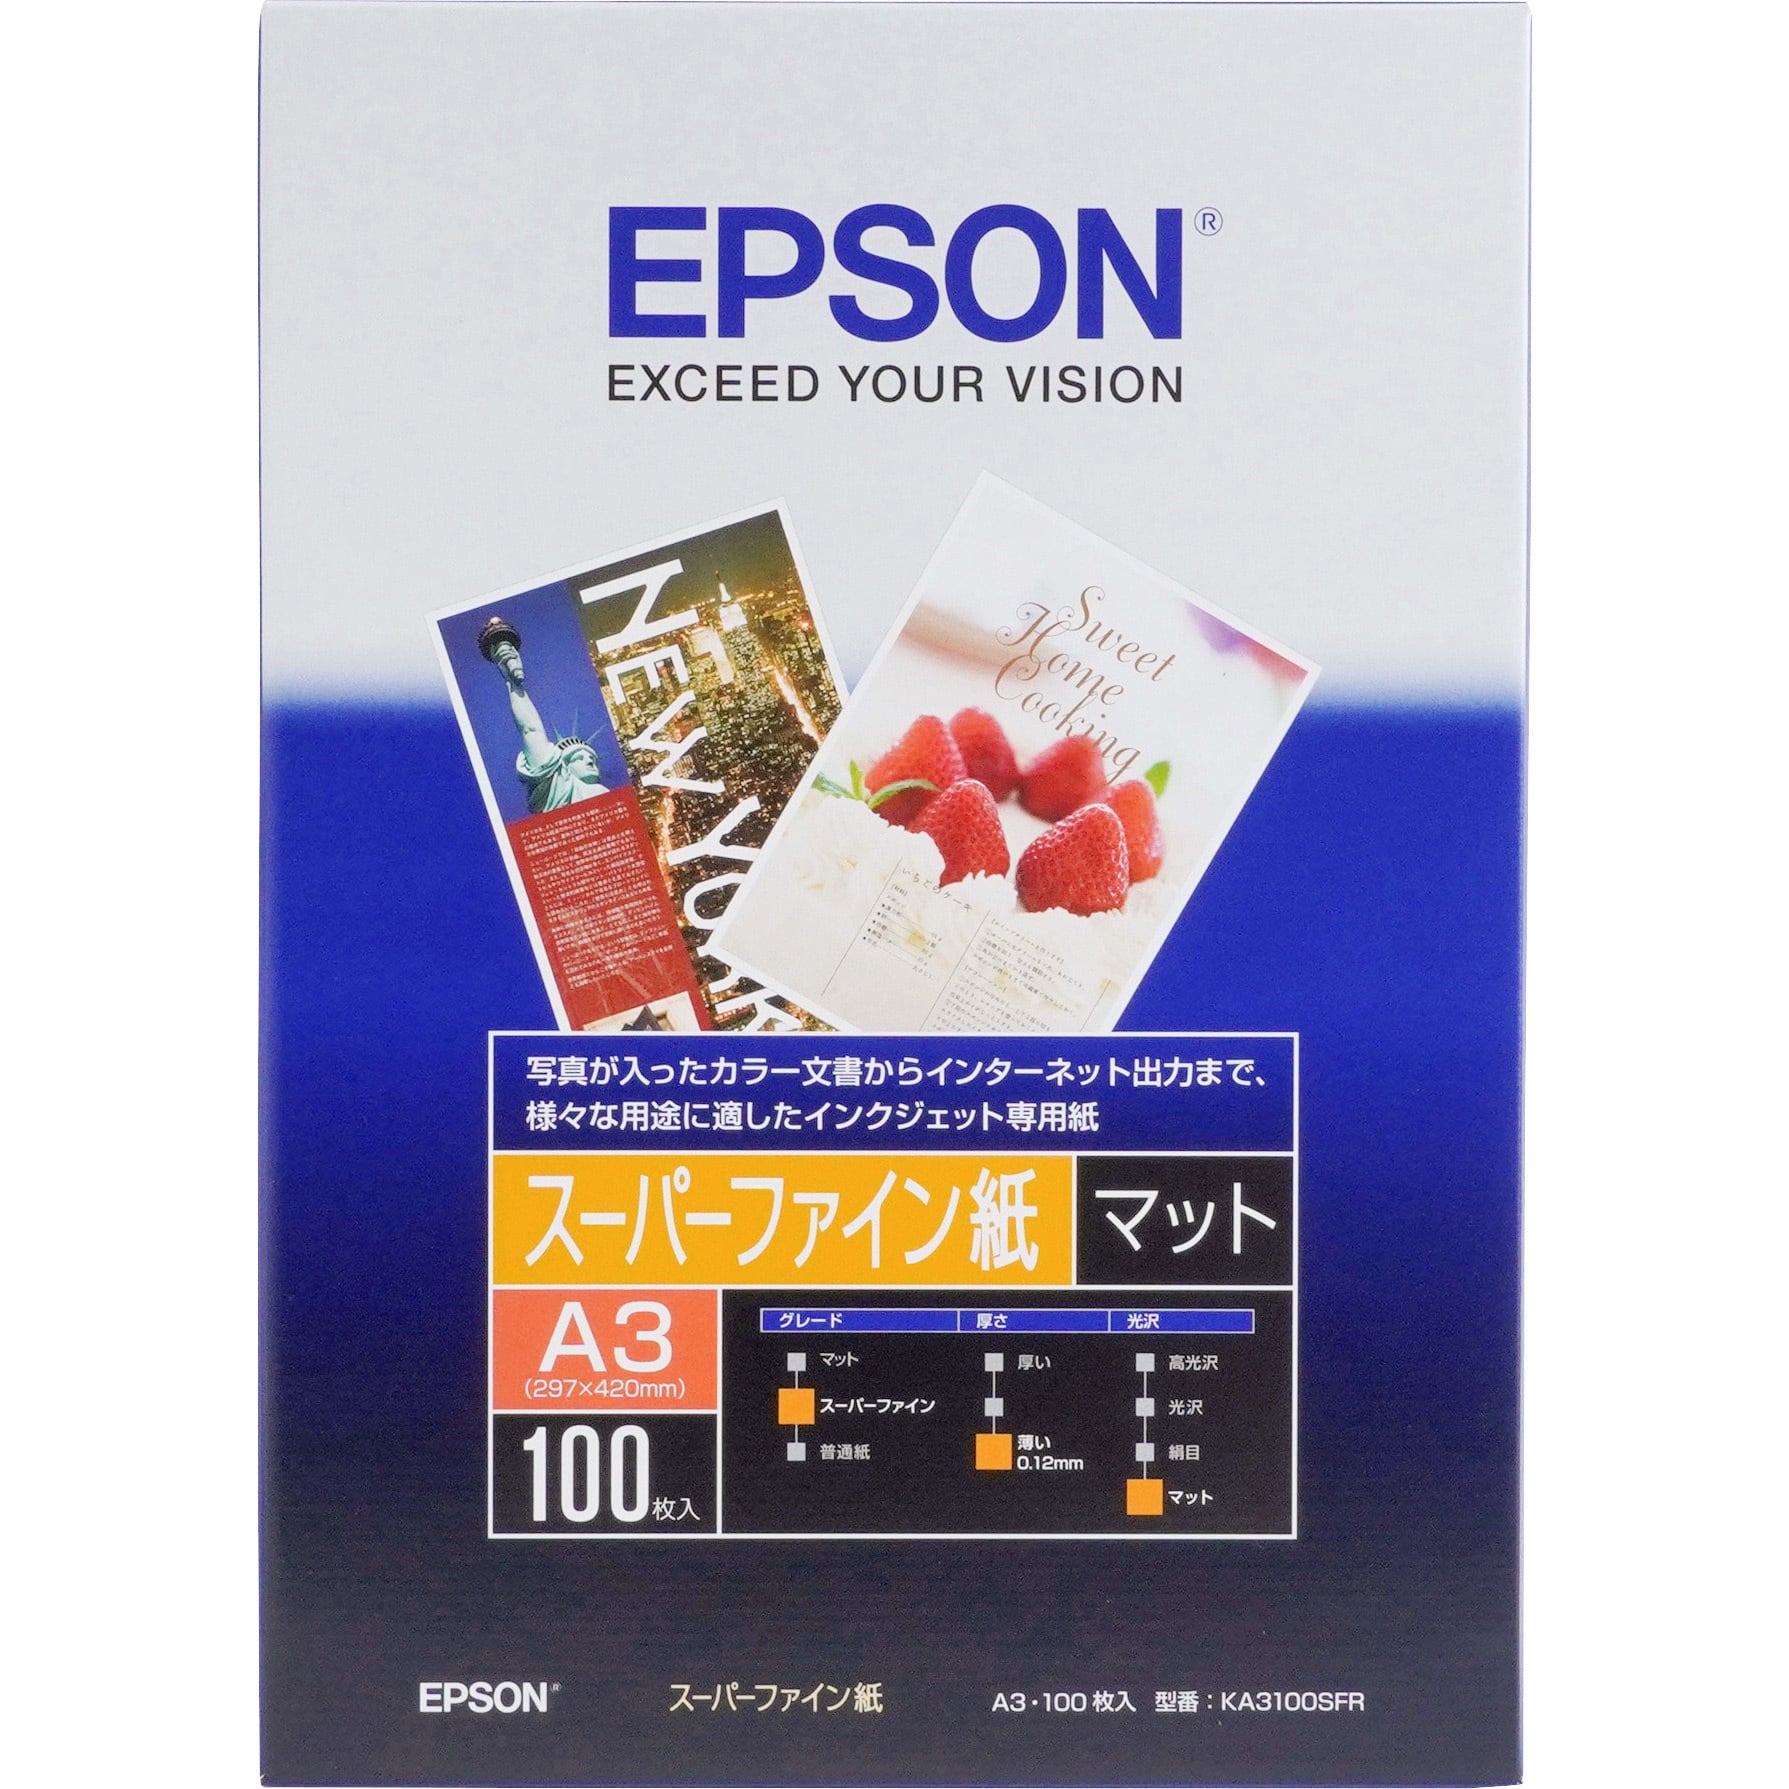 EPSON フォト・クオリティ・カード2&スーパーファイン専用ハガキ&写真用紙-